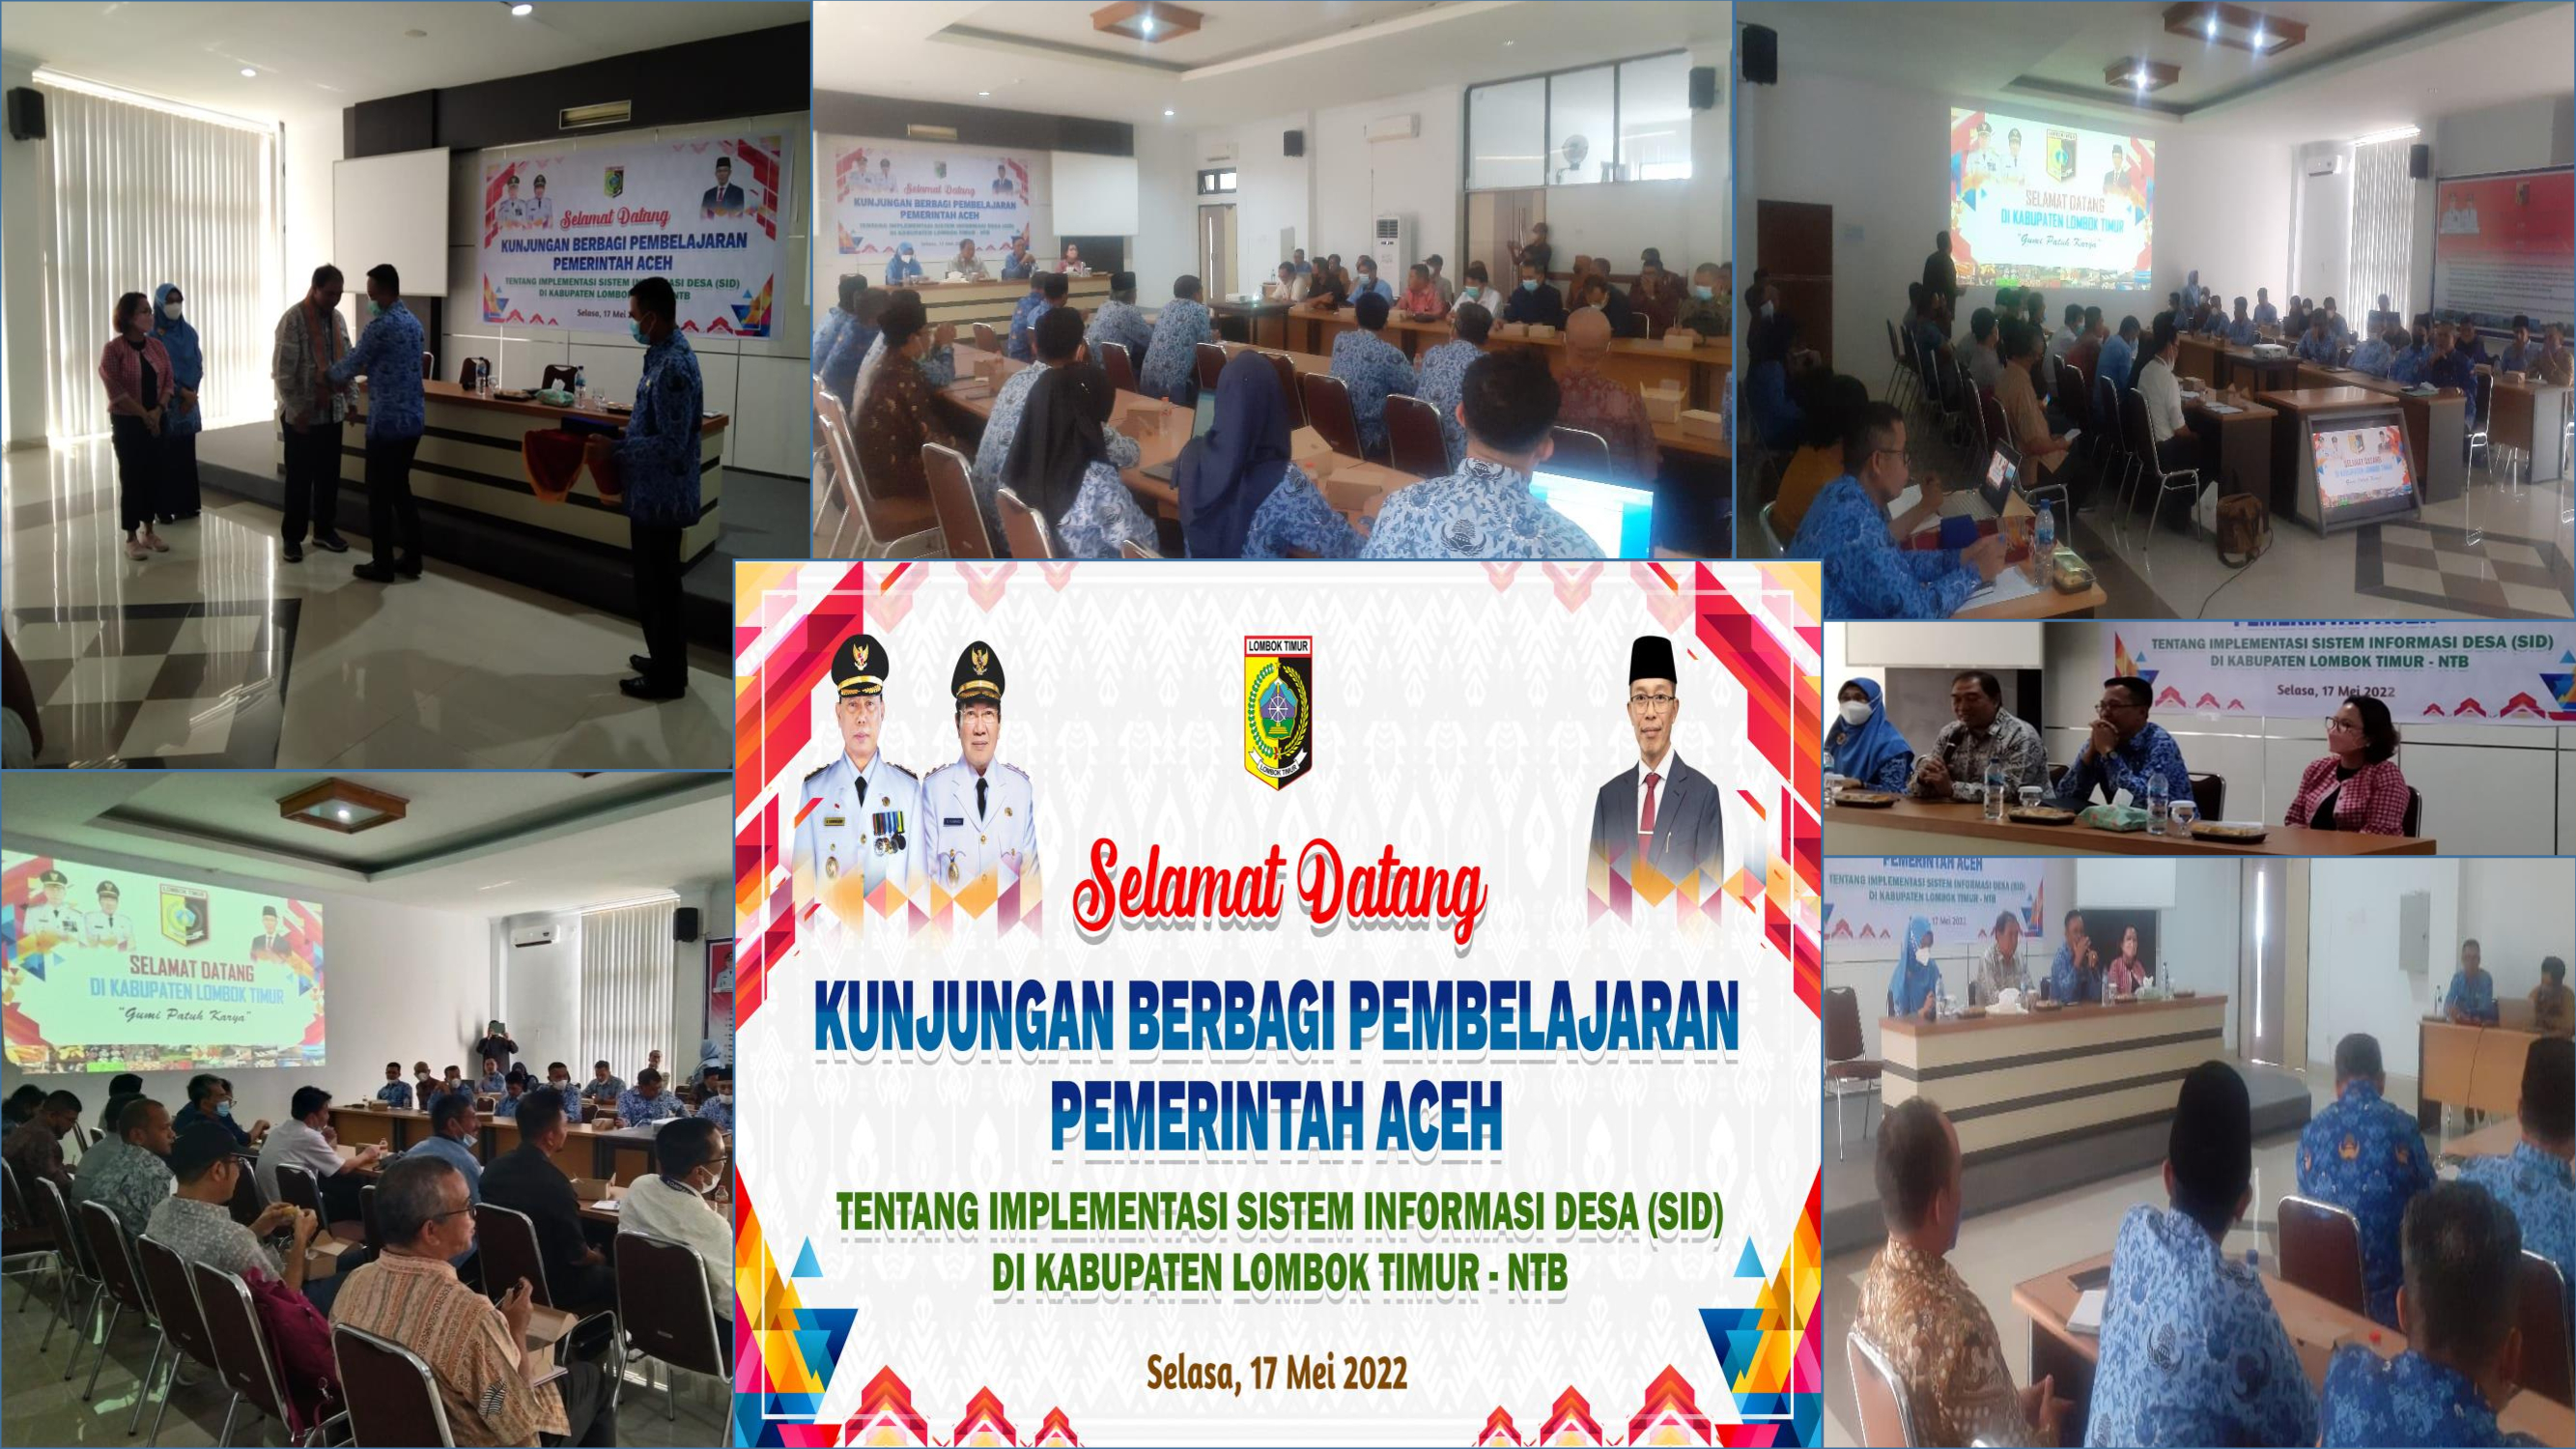 Kunjungan Pemerintah Aceh  Tentang Implementasi Sistem informasi Desa (SID)